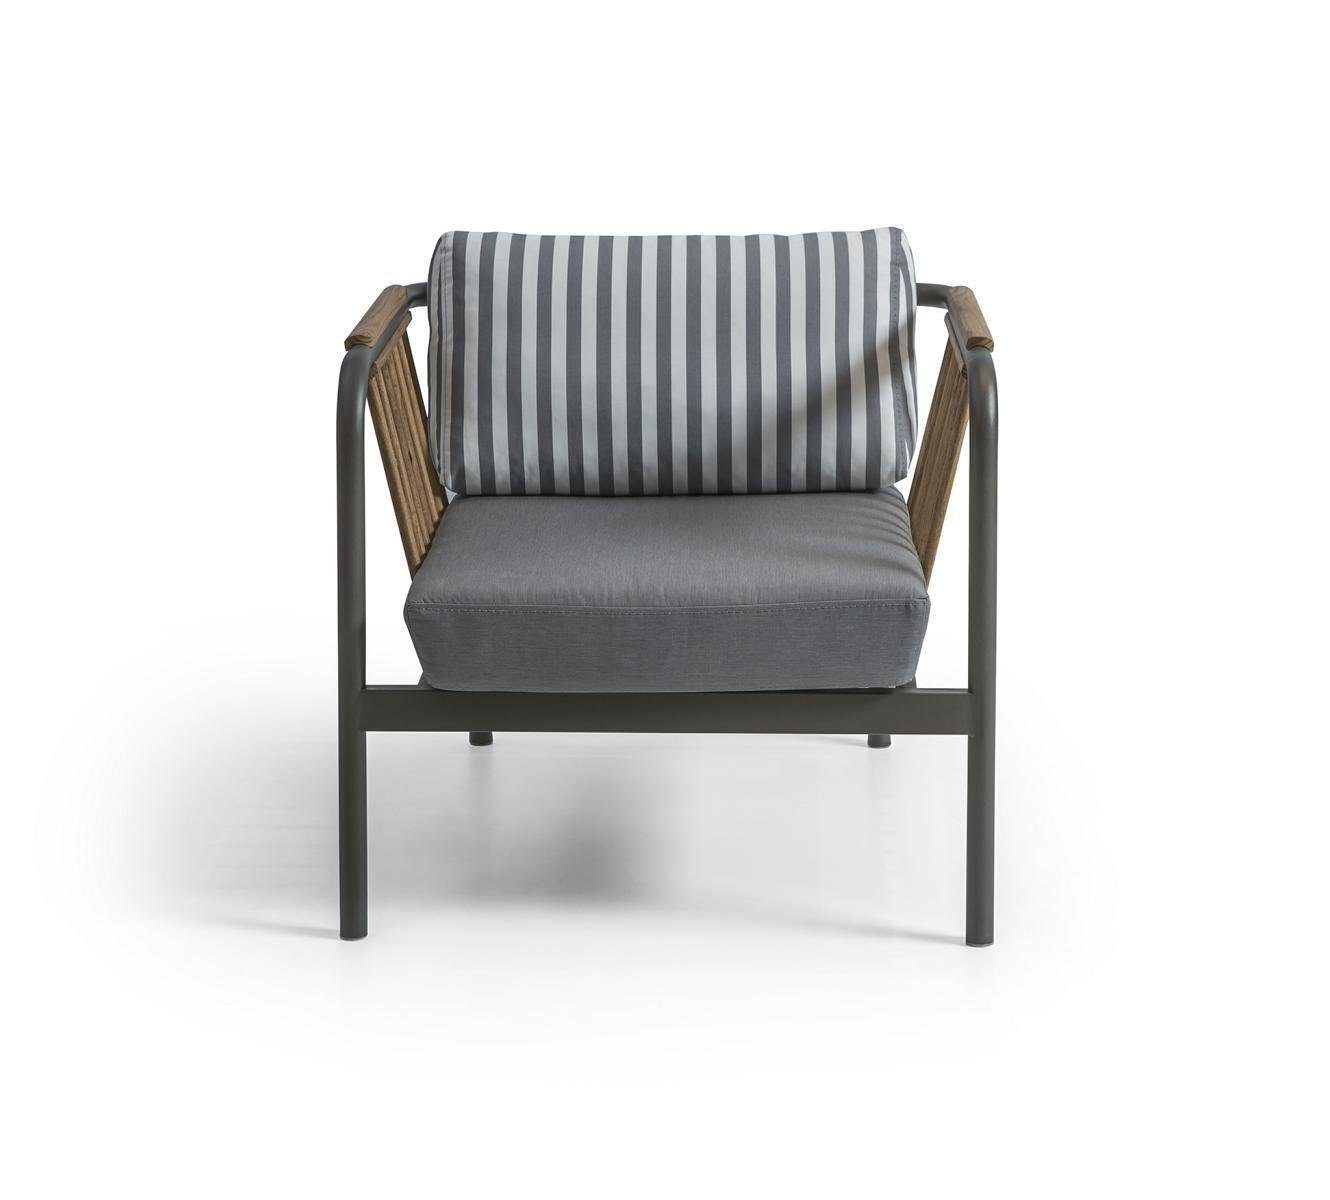 JVmoebel Sofa Sessel Modern Sitz in Möbel, Made Europa Neu Design Einrichtung Wohnzimmer Grau